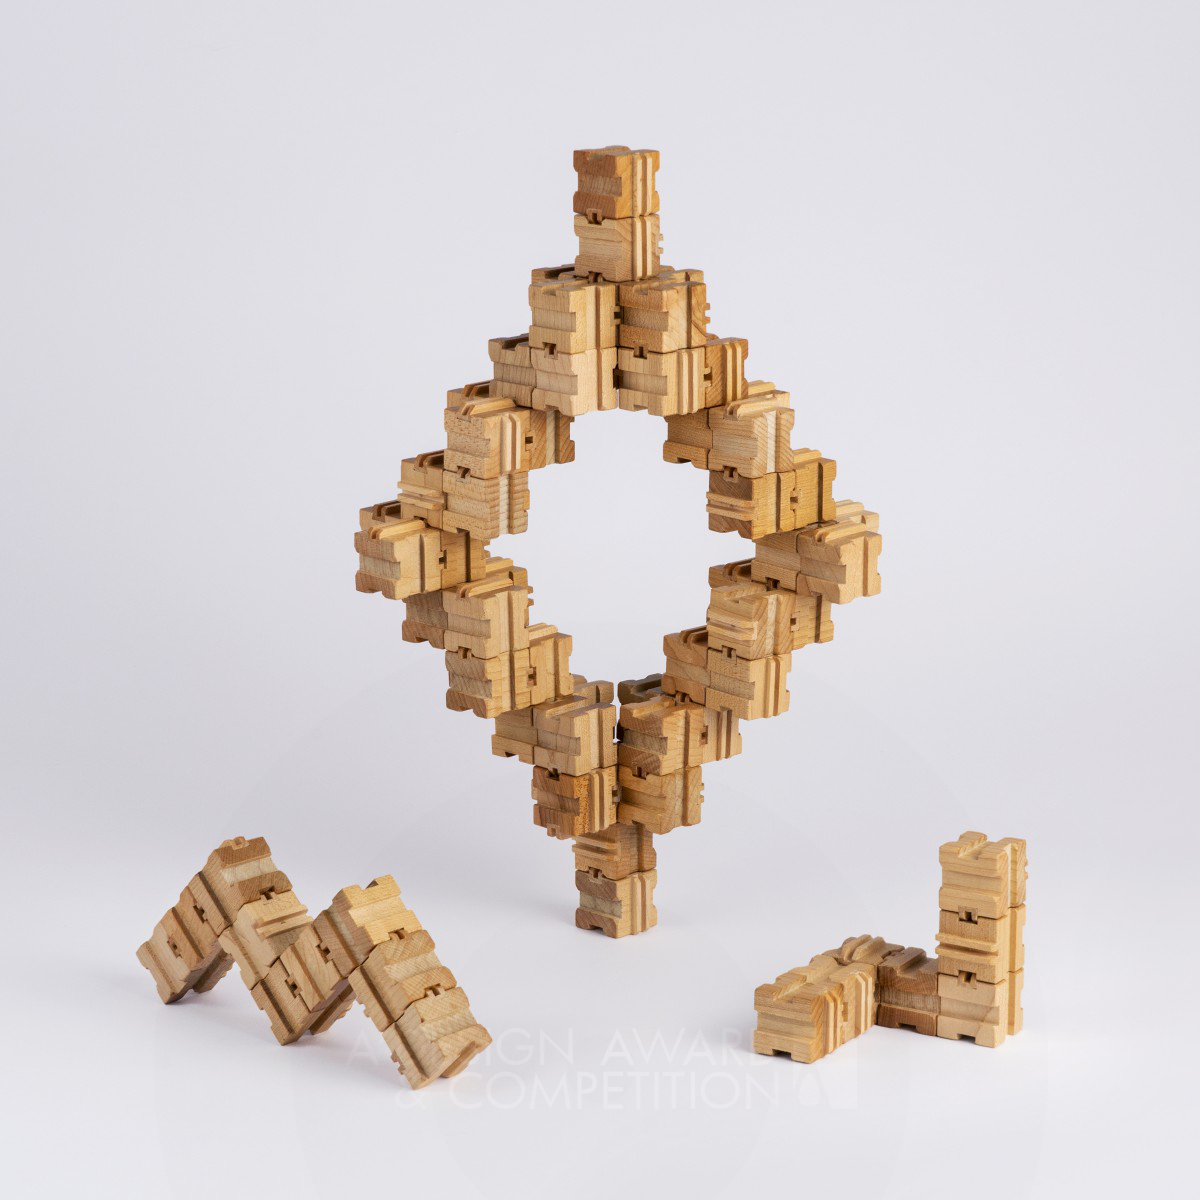 موركيوب: لعبة خشبية تحفز الإبداع والتفكير الهندسي